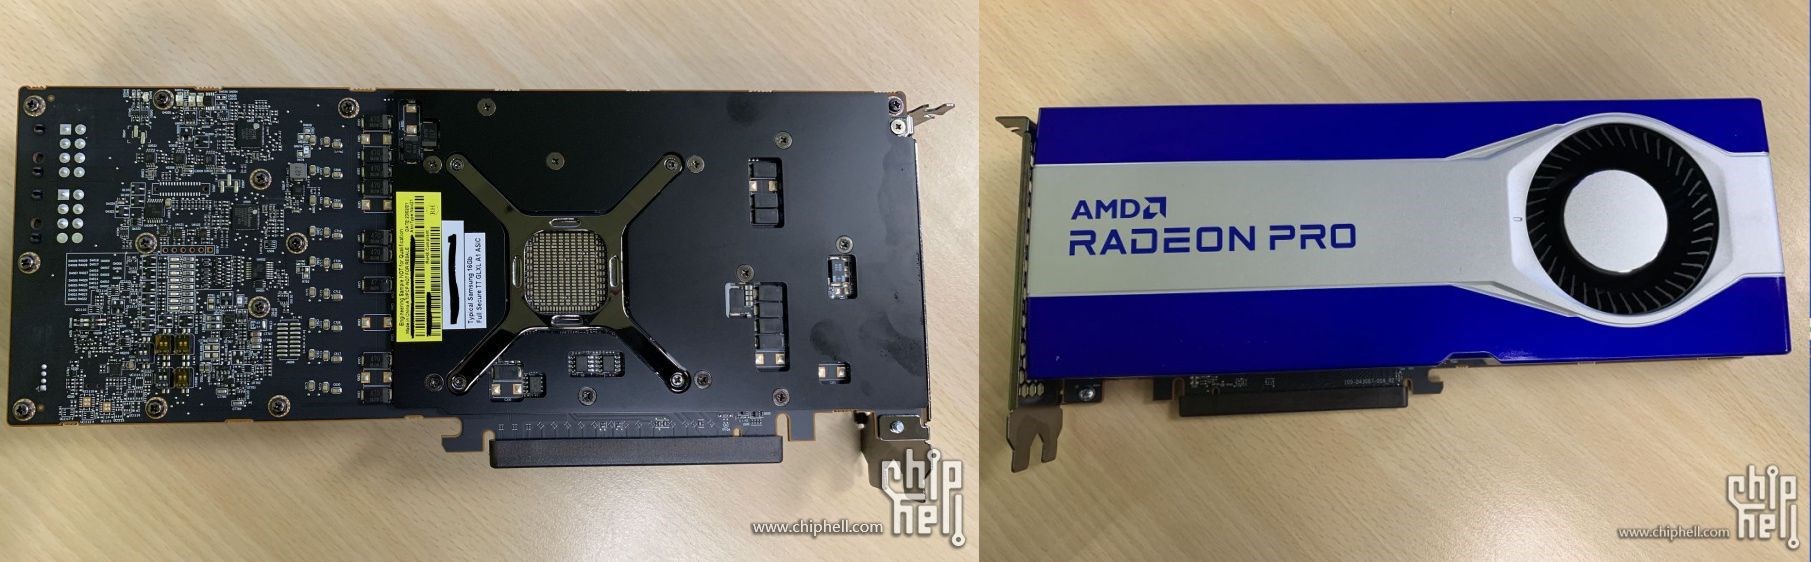 AMD Radeon Pro W6800 32 GB VRAM’le geliyor